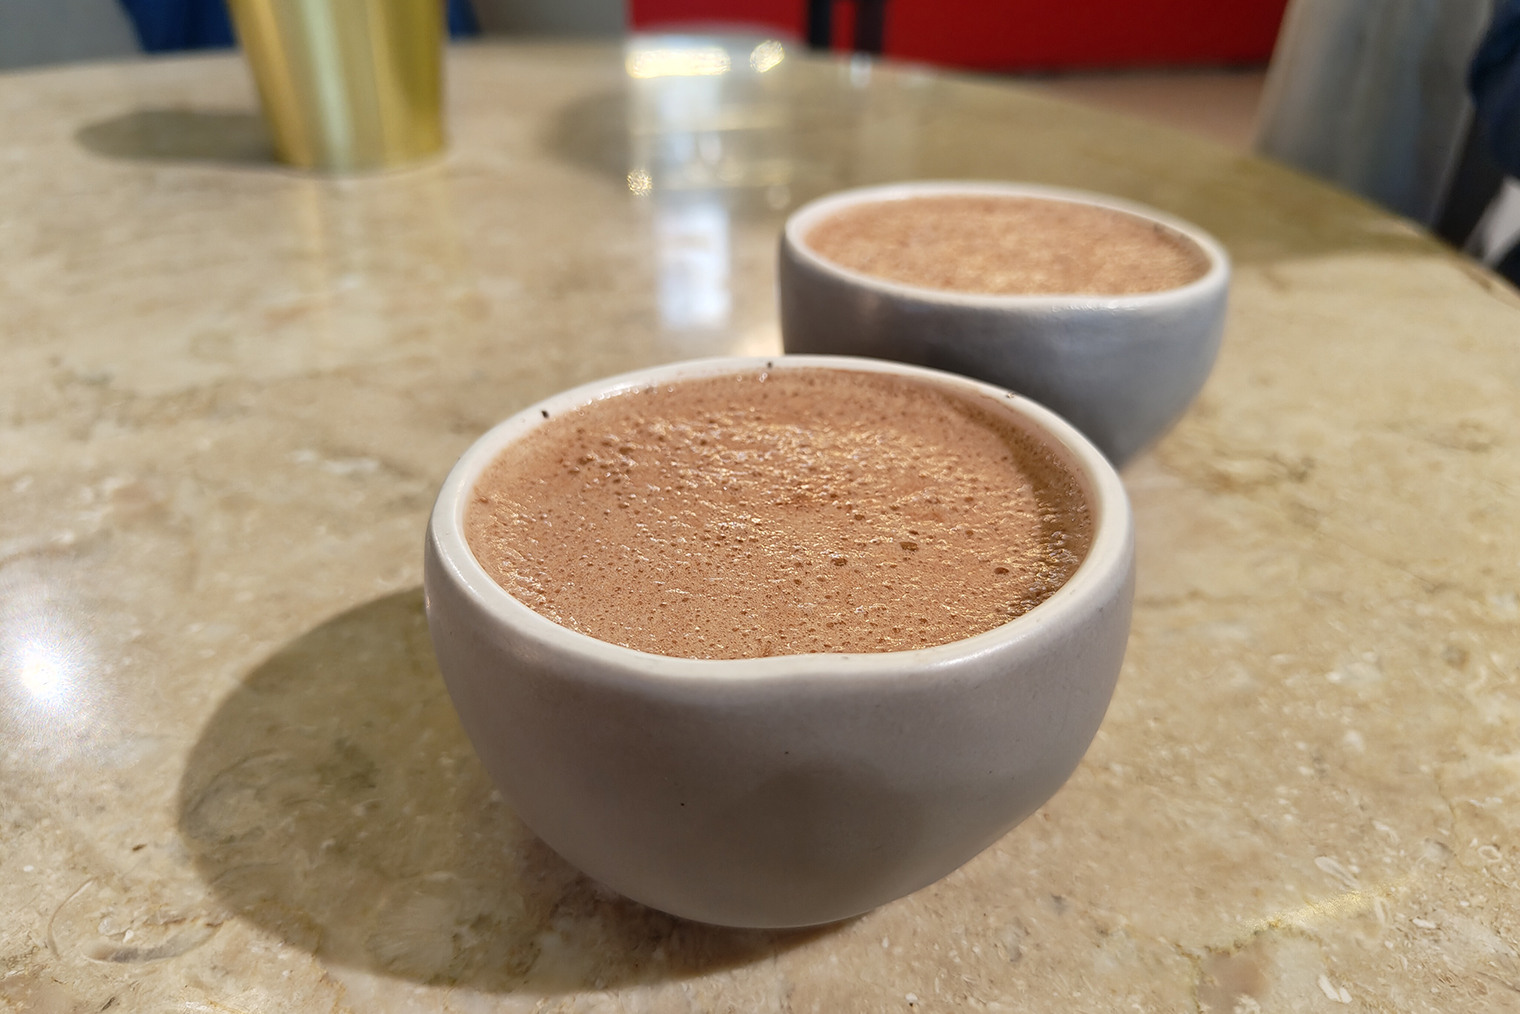 Кофейный напиток «брусника⁠-⁠батч» по виду больше напоминает какао. Камера сохранила ореховый оттенок пенки и текстуру с множеством пузырьков. Задний фон при этом аккуратно размыт